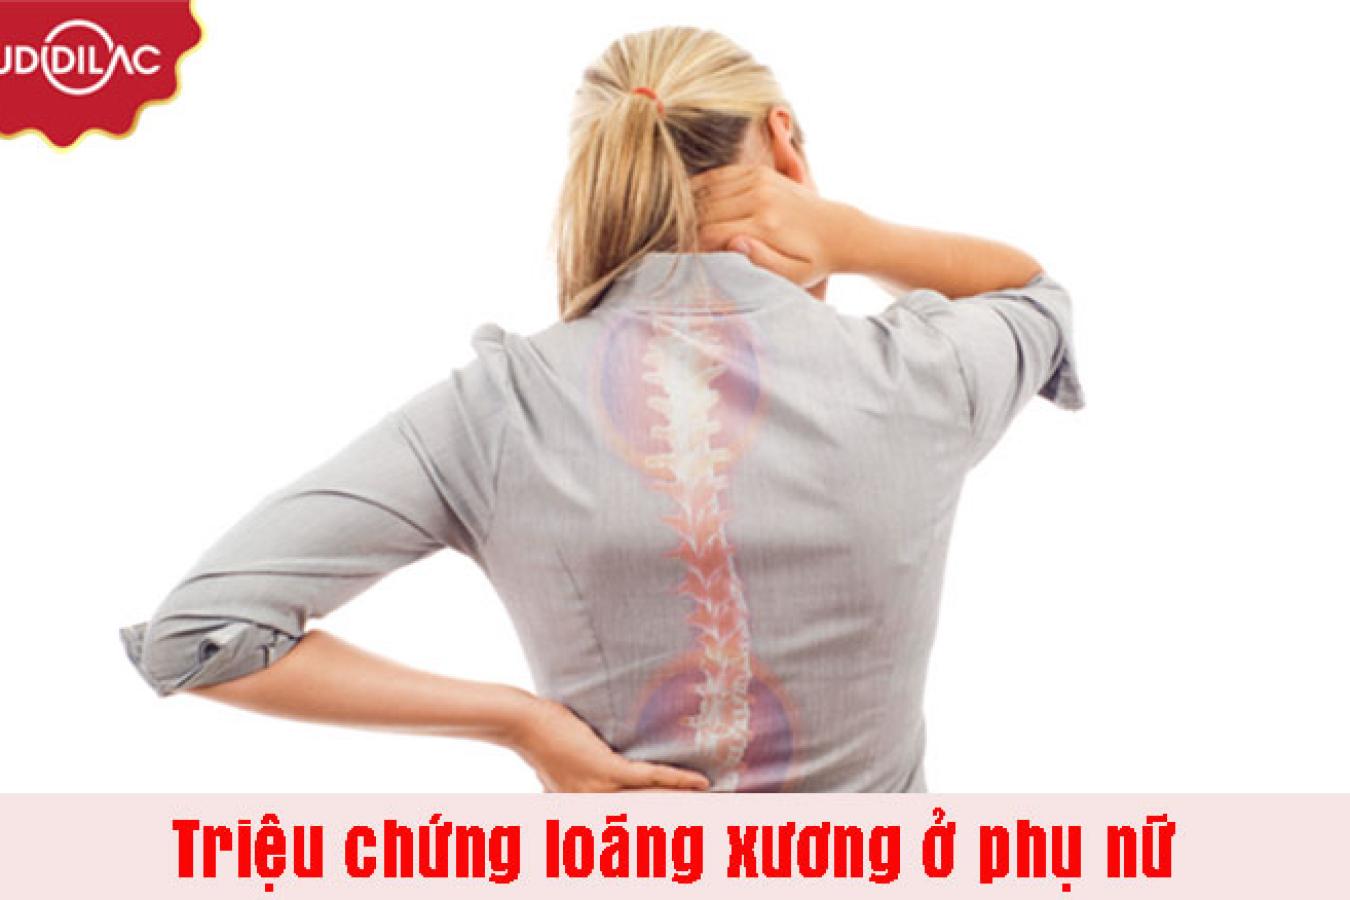 Nhận biết các triệu chứng loãng xương ở phụ nữ